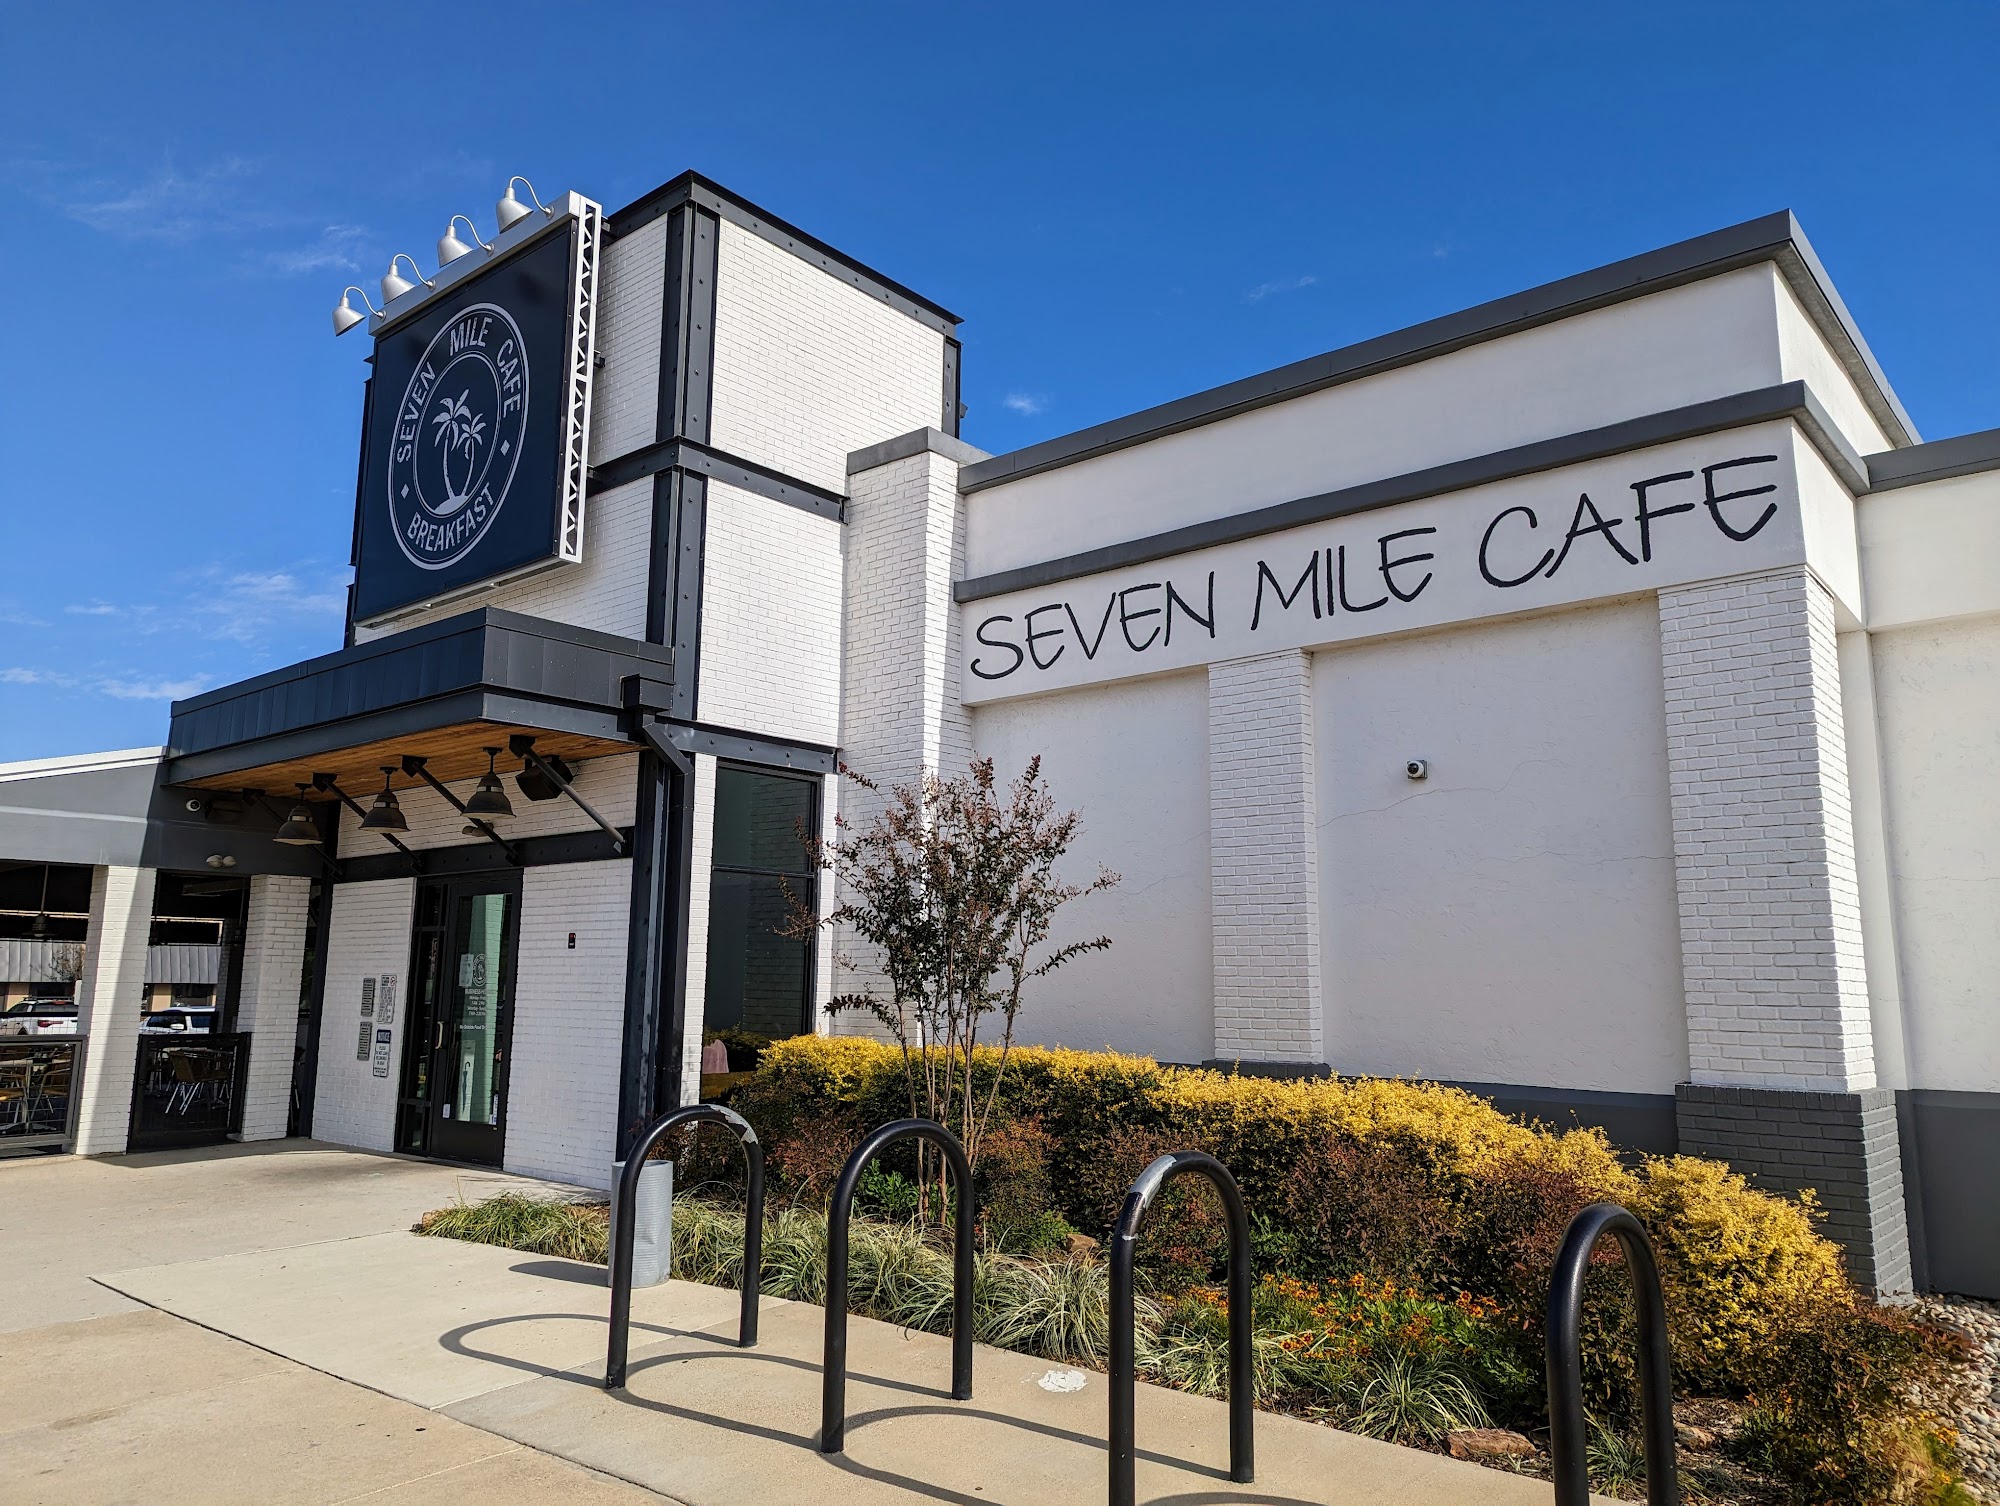 Seven Mile Cafe